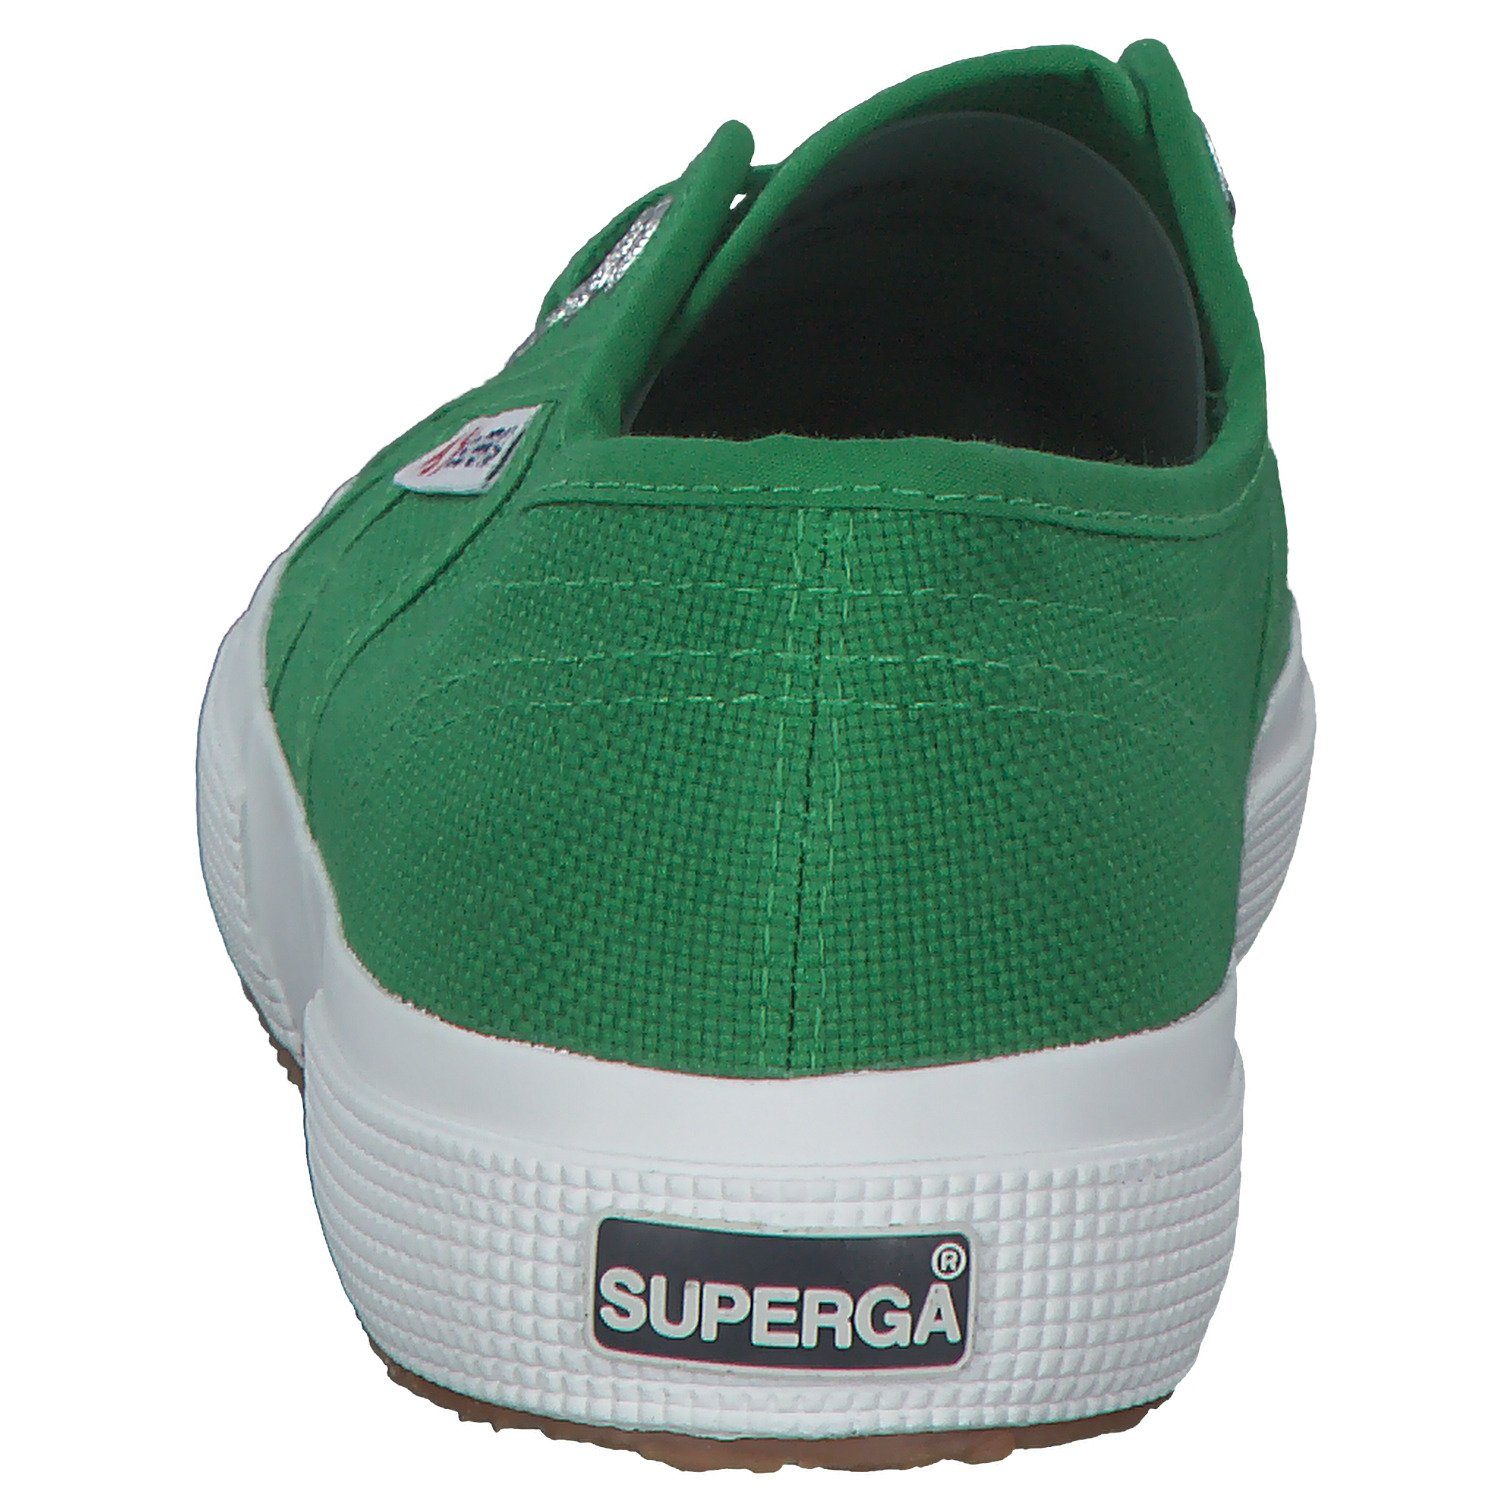 Classic green Sneaker island (19801315) 2750 Cotu Superga S000010 Superga